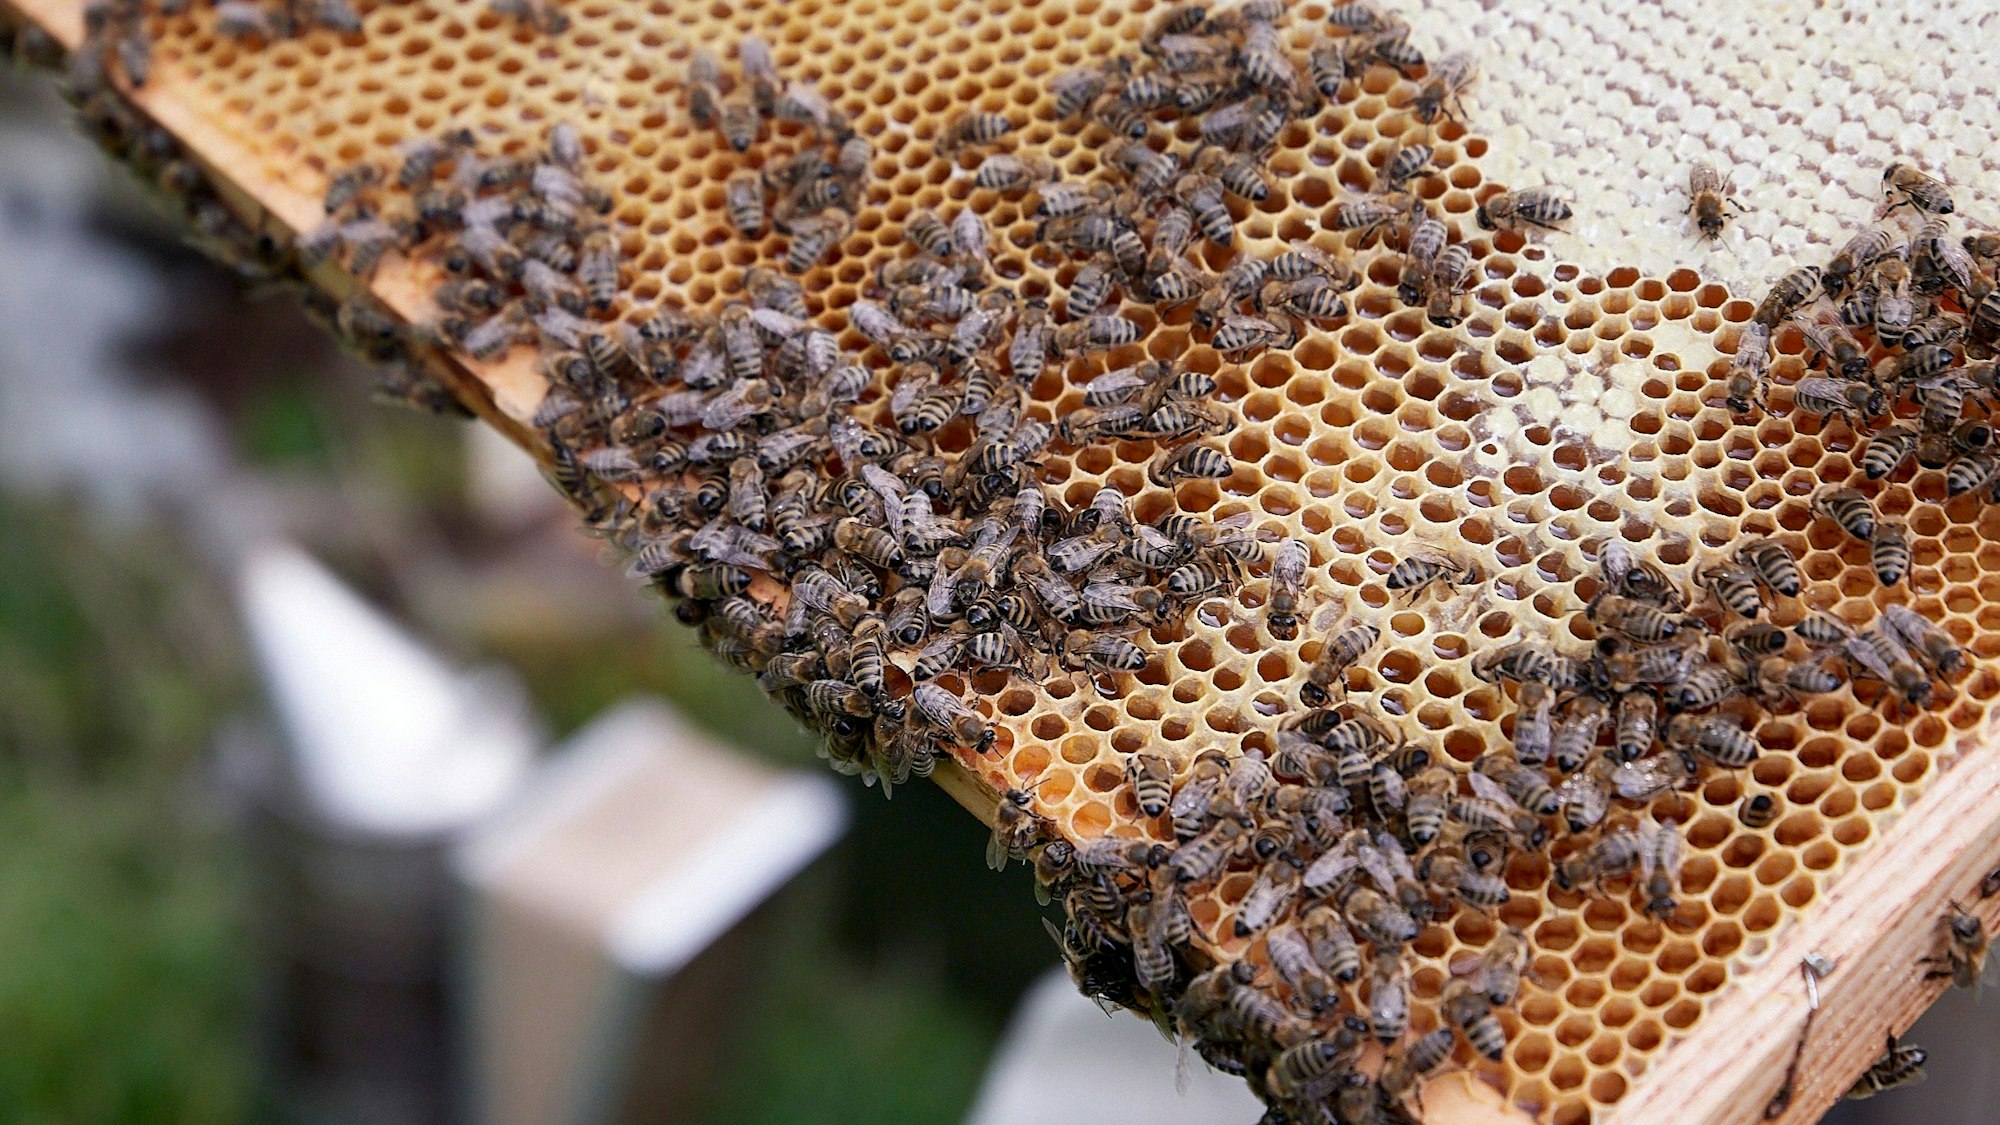 Das Bild zeigt eine Wabe mit zahlreichen Bienen.